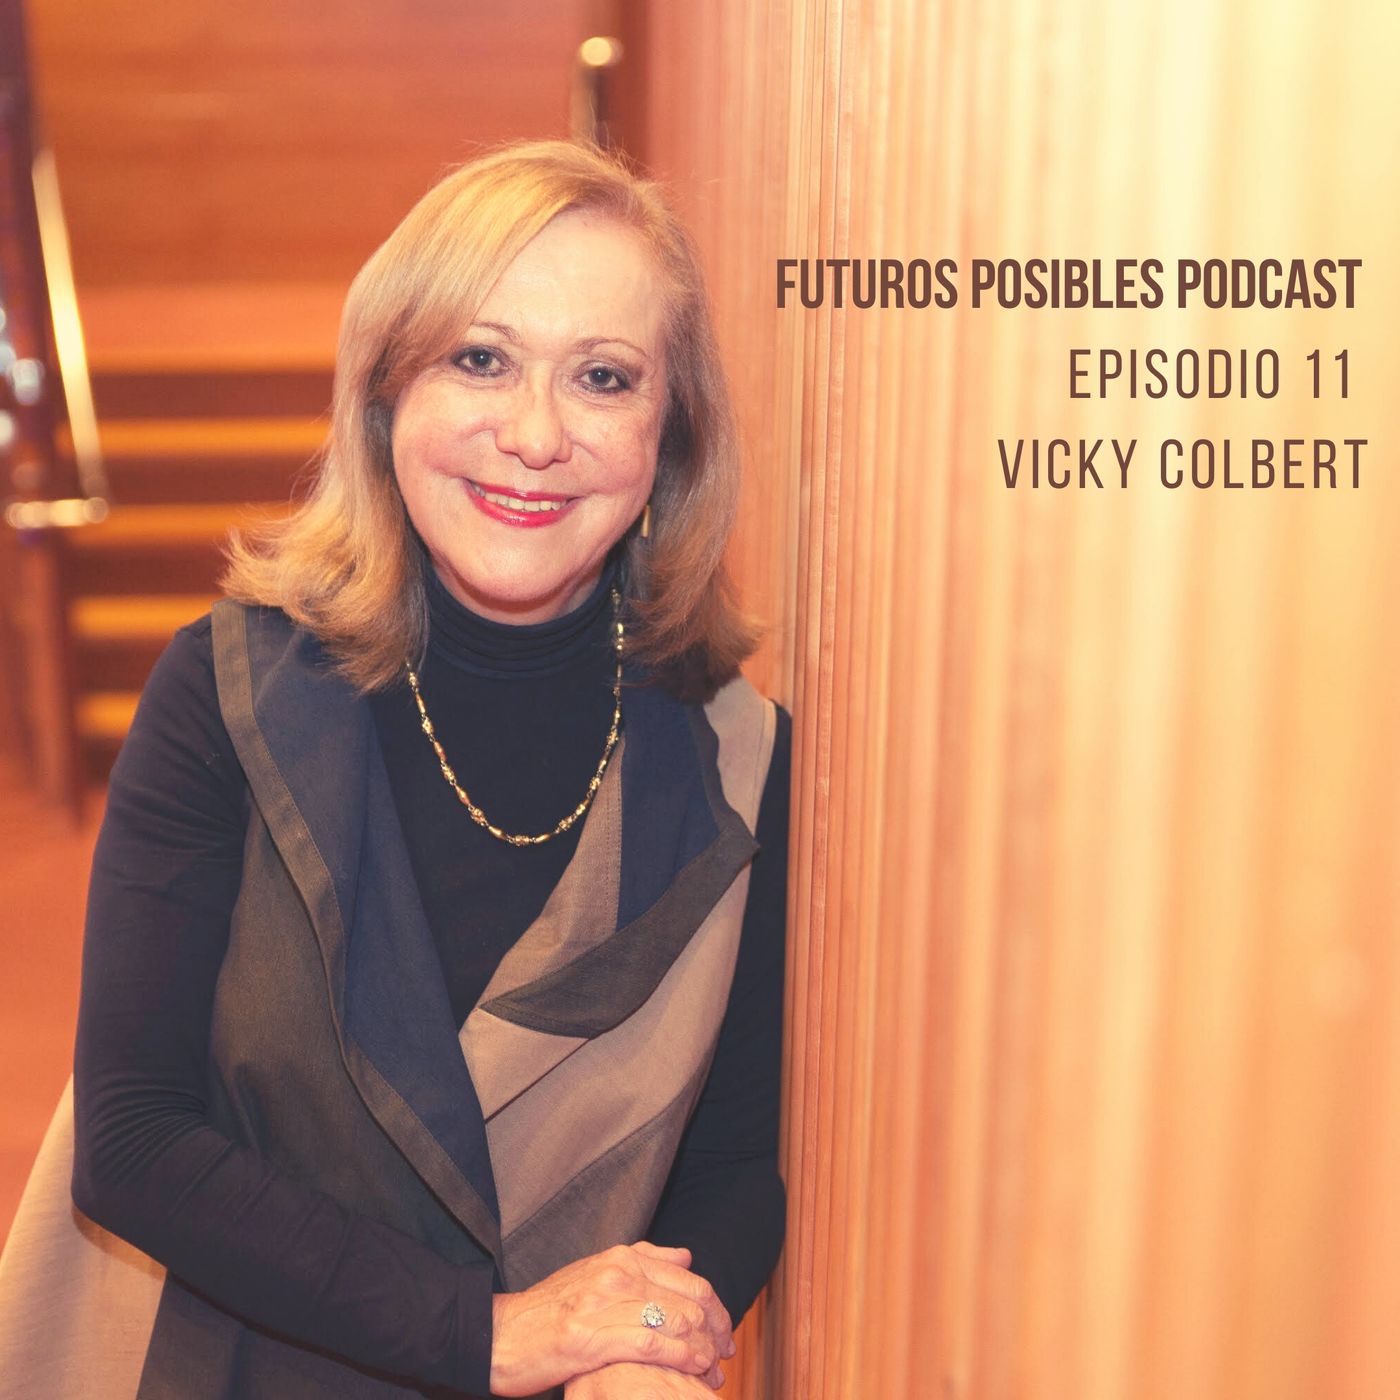 Ep. 11: Cambiar el aula para cambiar el mundo, con Vicky Colbert